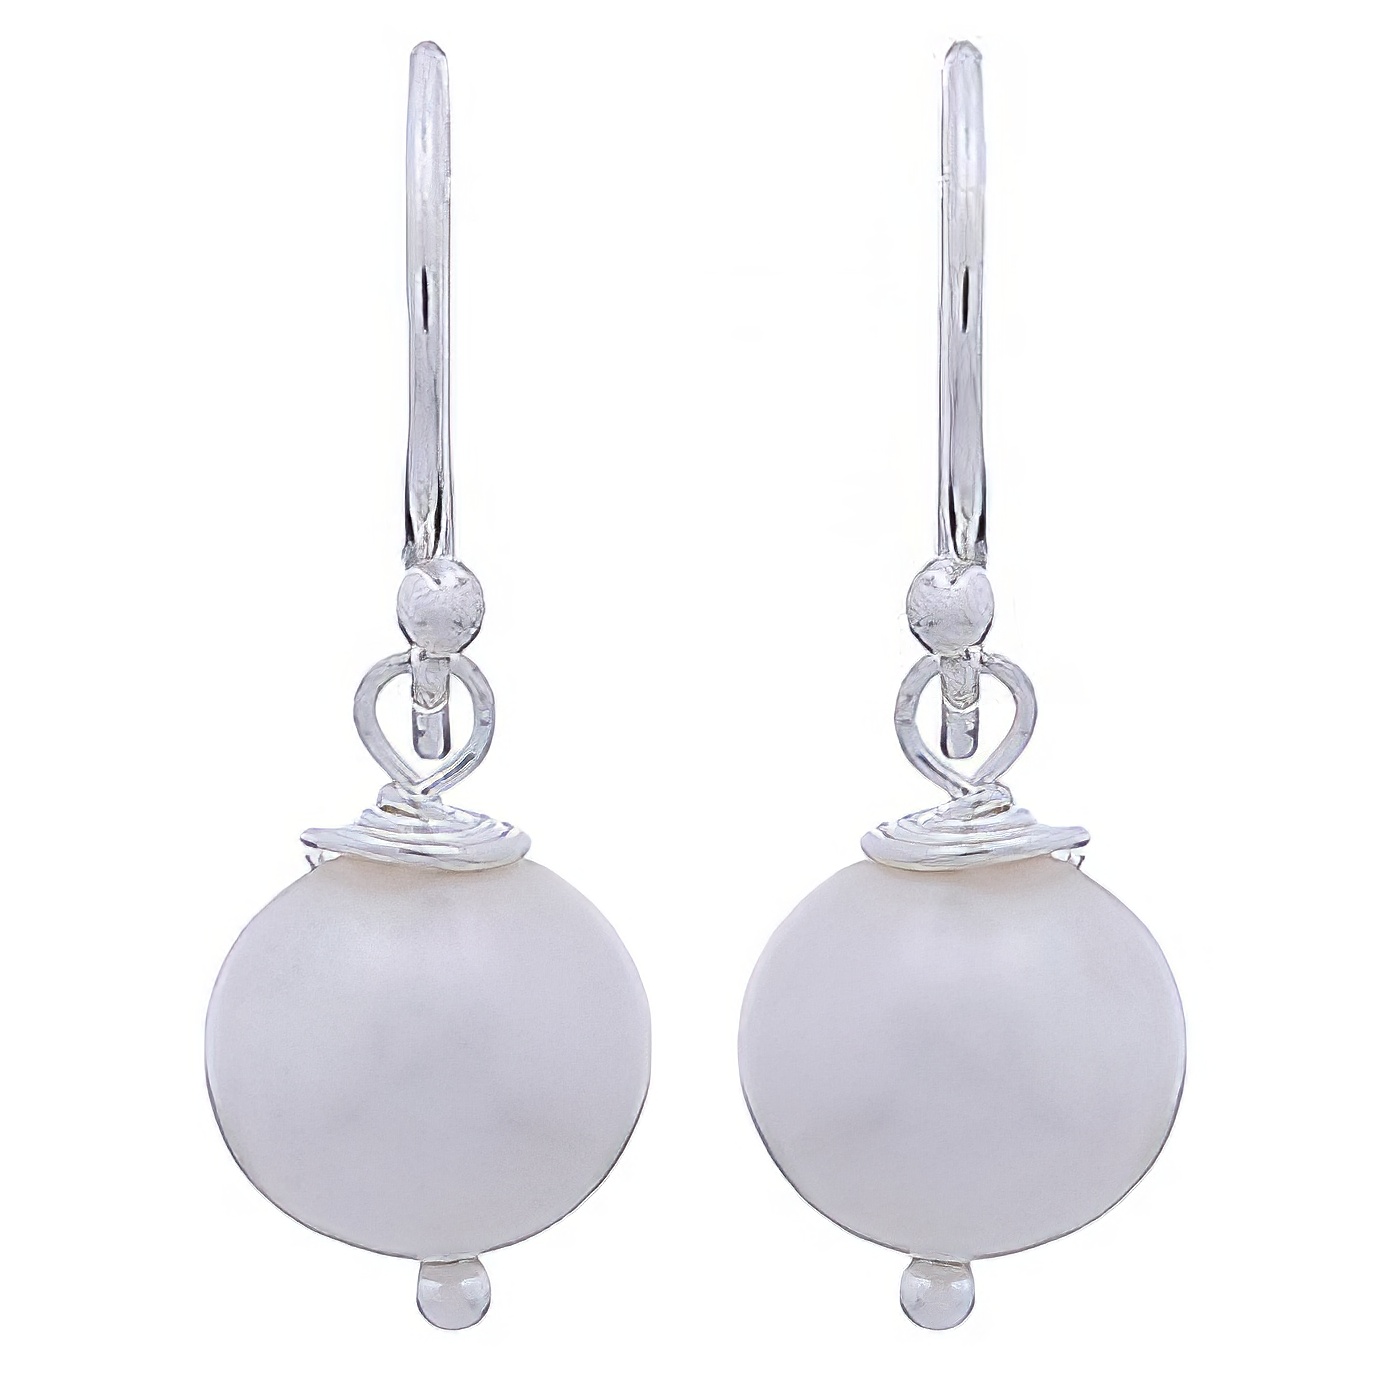 Cute spherical freshwater pearls hand soldered silver earrings by BeYindi 